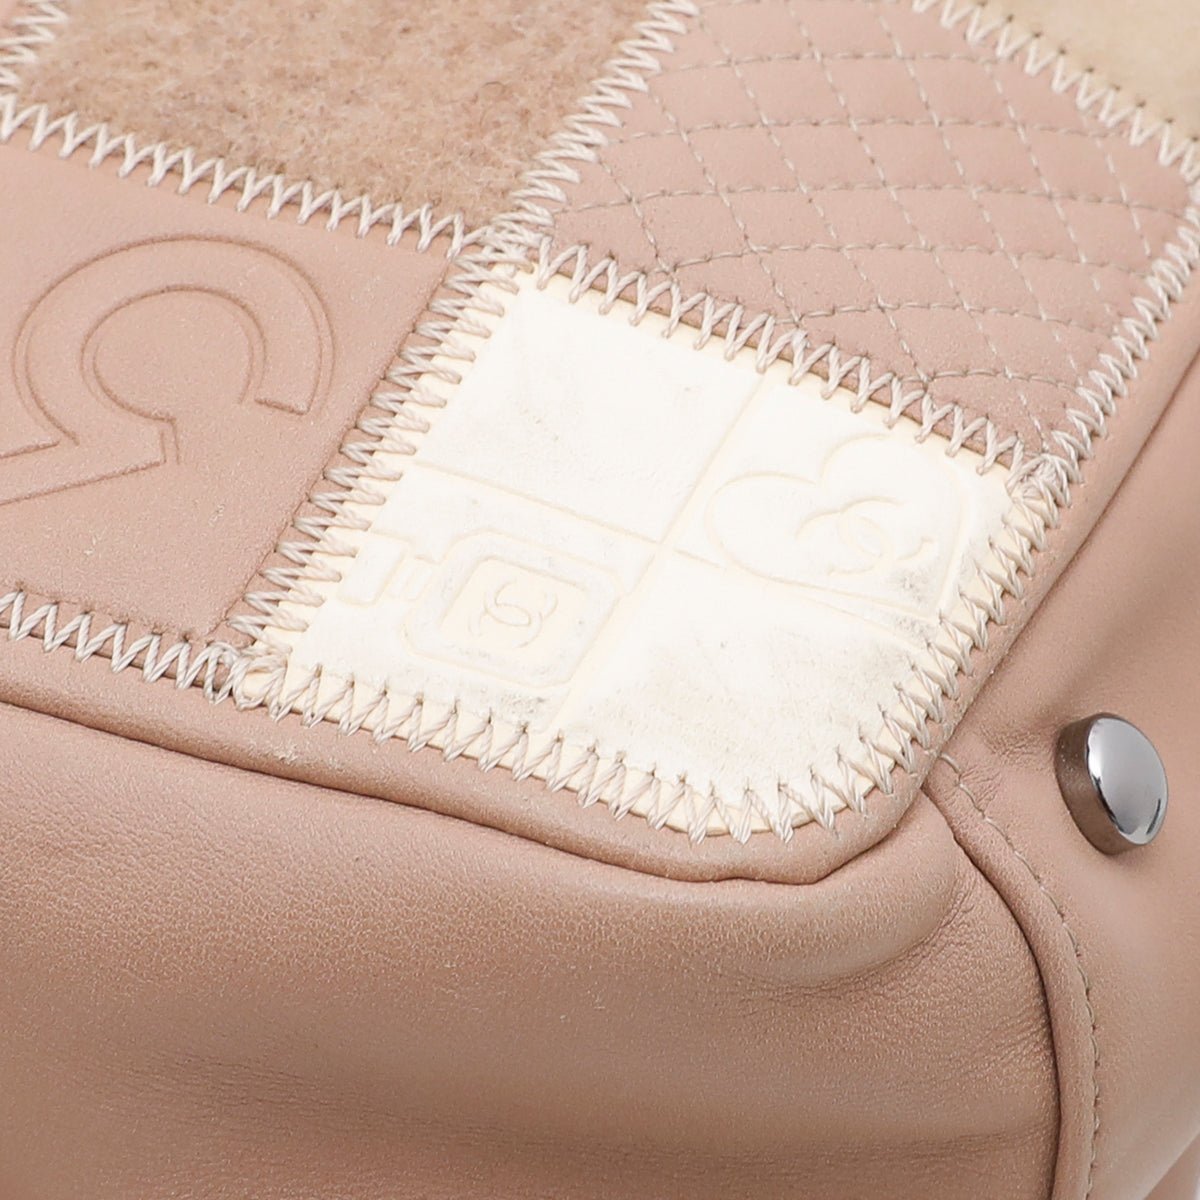 The Closet - Chanel Beige CC Patchwork Precious Symbols Tote Bag | The Closet